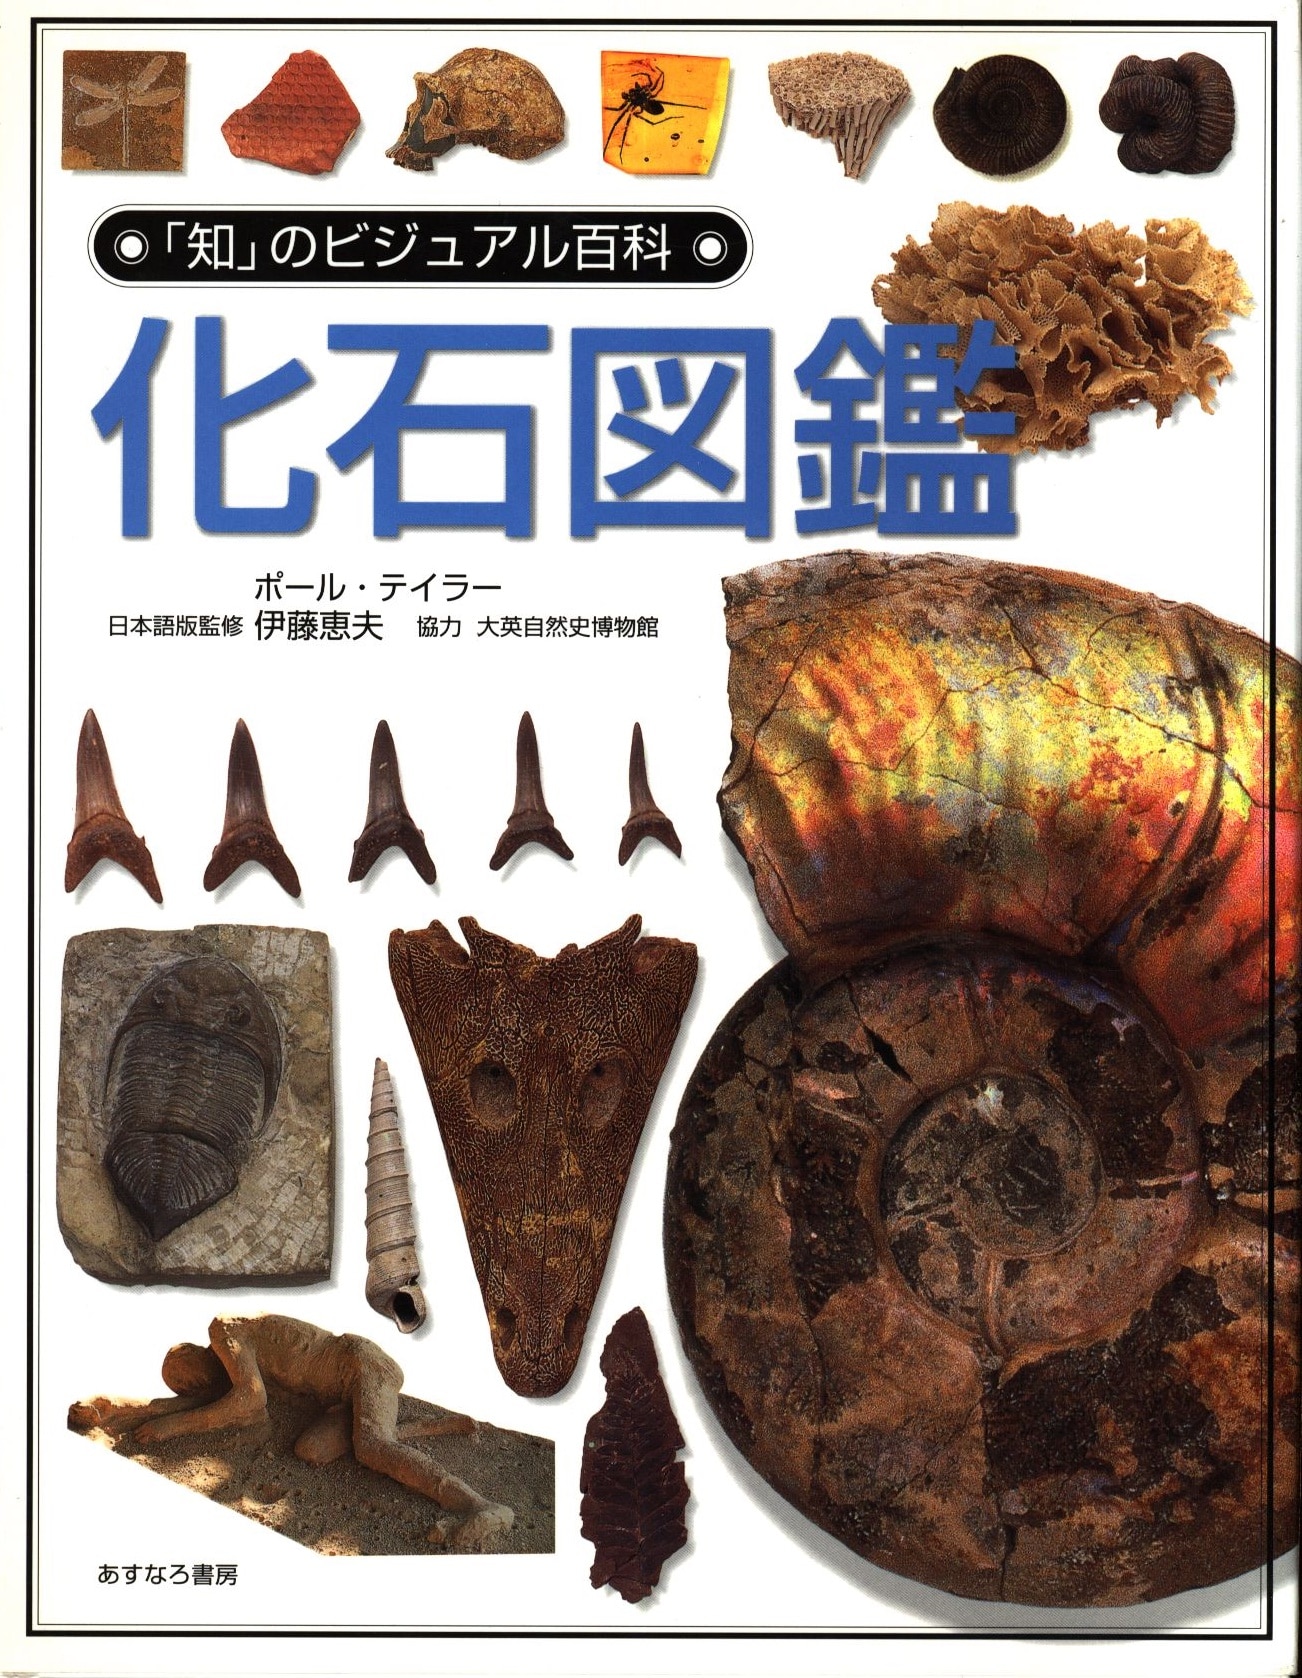 知のビジュアル百科 4 ポール テイラー 化石図鑑 まんだらけ Mandarake